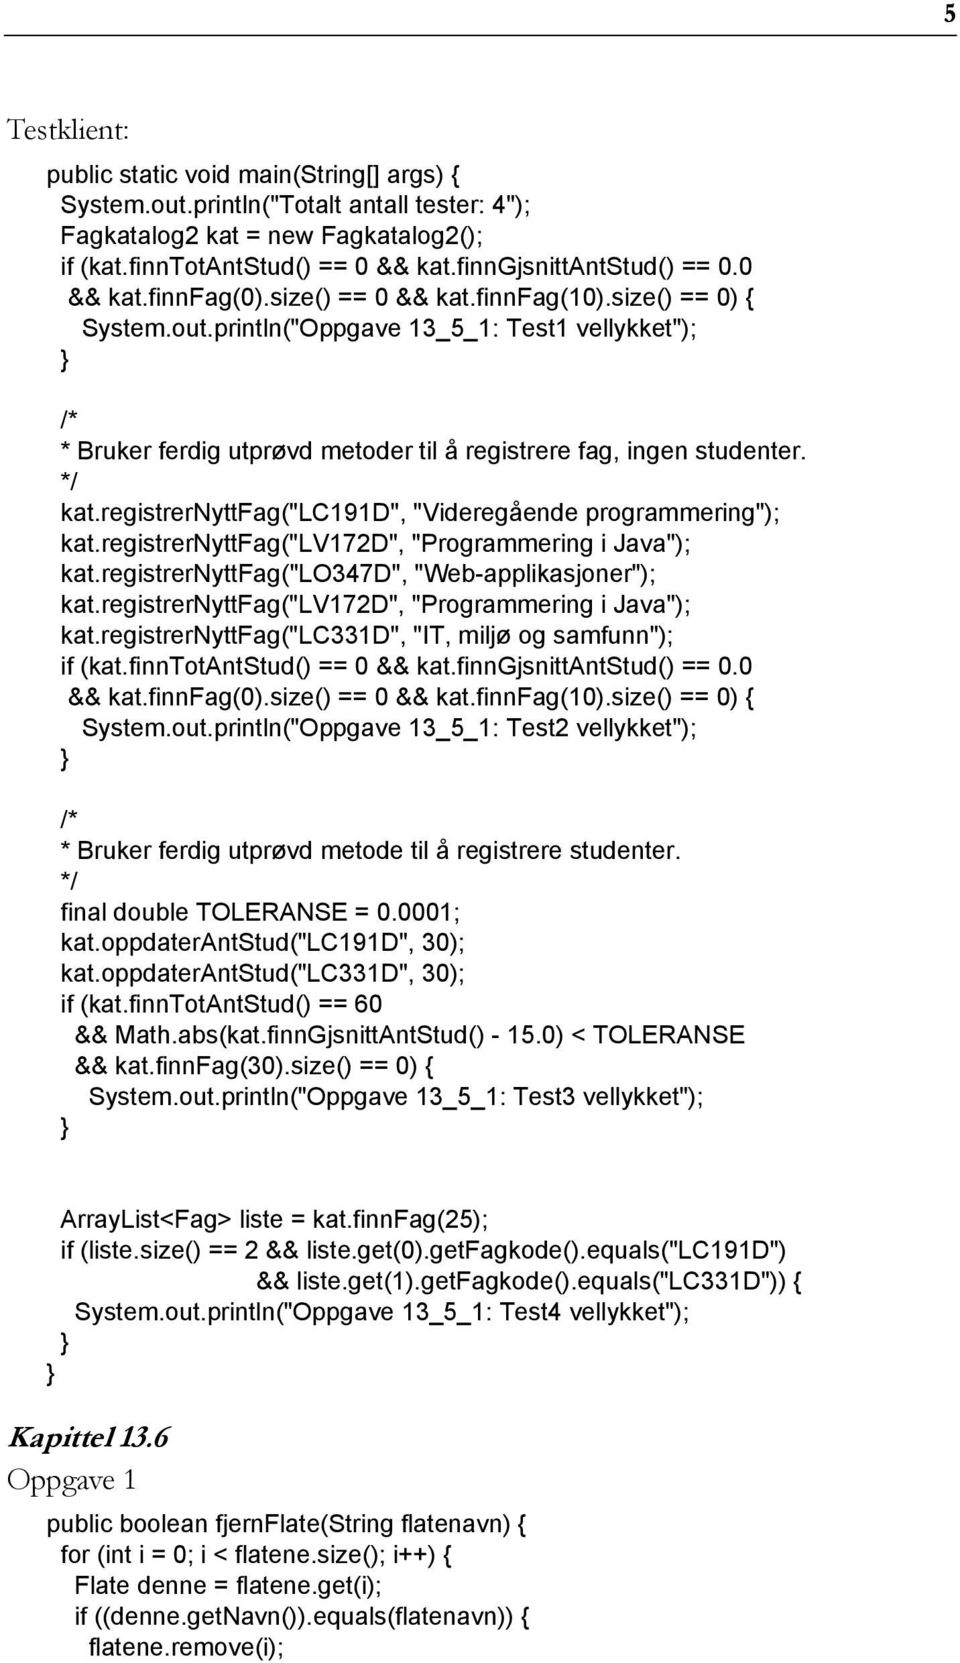 registrernyttfag("lc191d", "Videregående programmering"); kat.registrernyttfag("lv172d", "Programmering i Java"); kat.registrernyttfag("lo347d", "Web-applikasjoner"); kat.